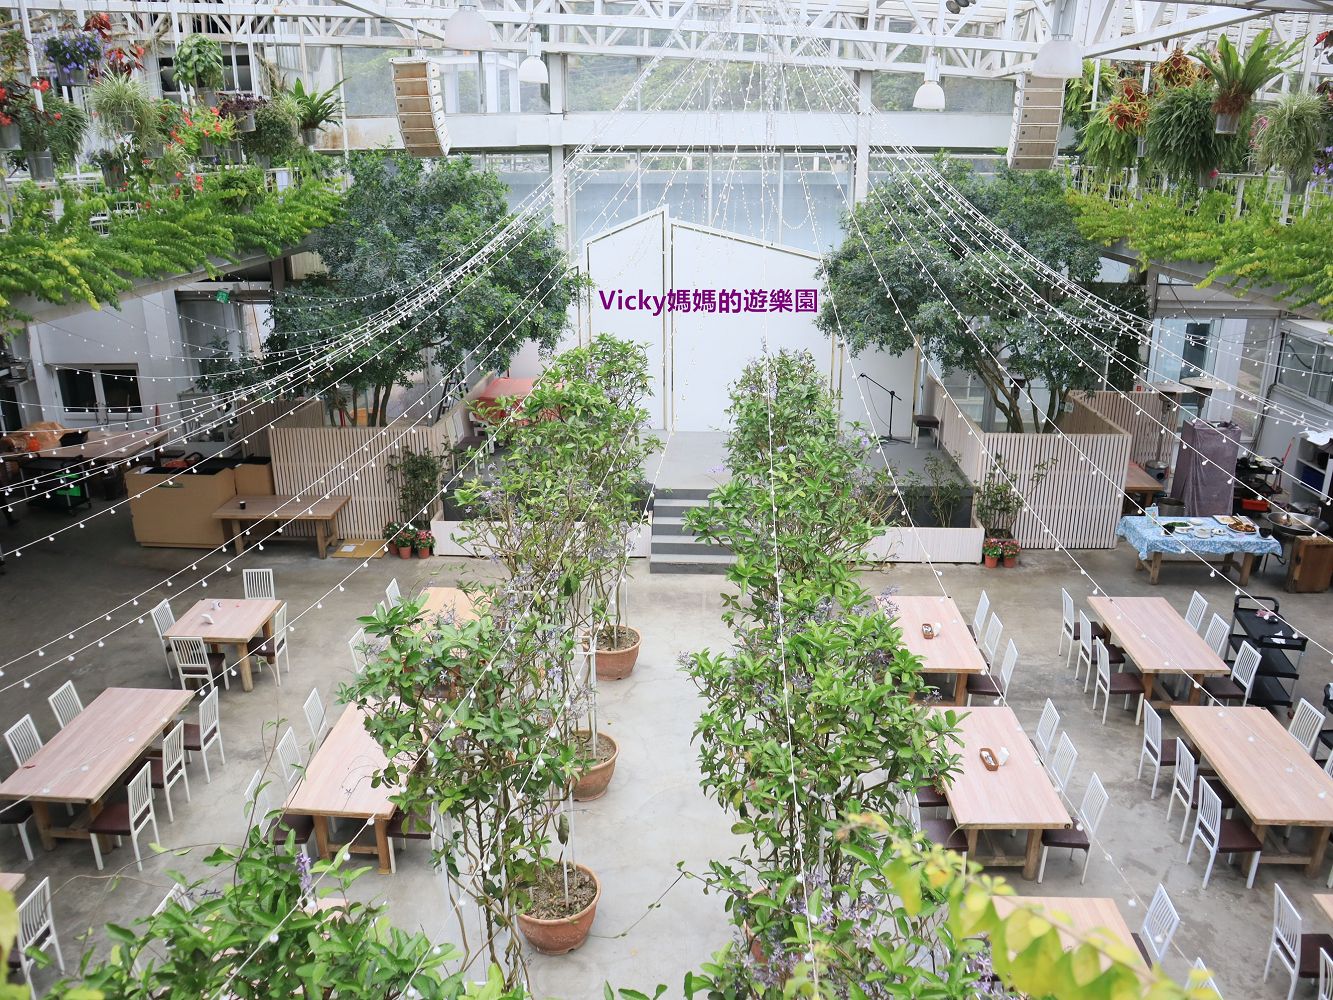 宜蘭景點︱香草菲菲 芳香植物博物館：充滿香草的空中廊道好美好拍好浪漫，親子一起植栽DIY，超適合親子的室內景點